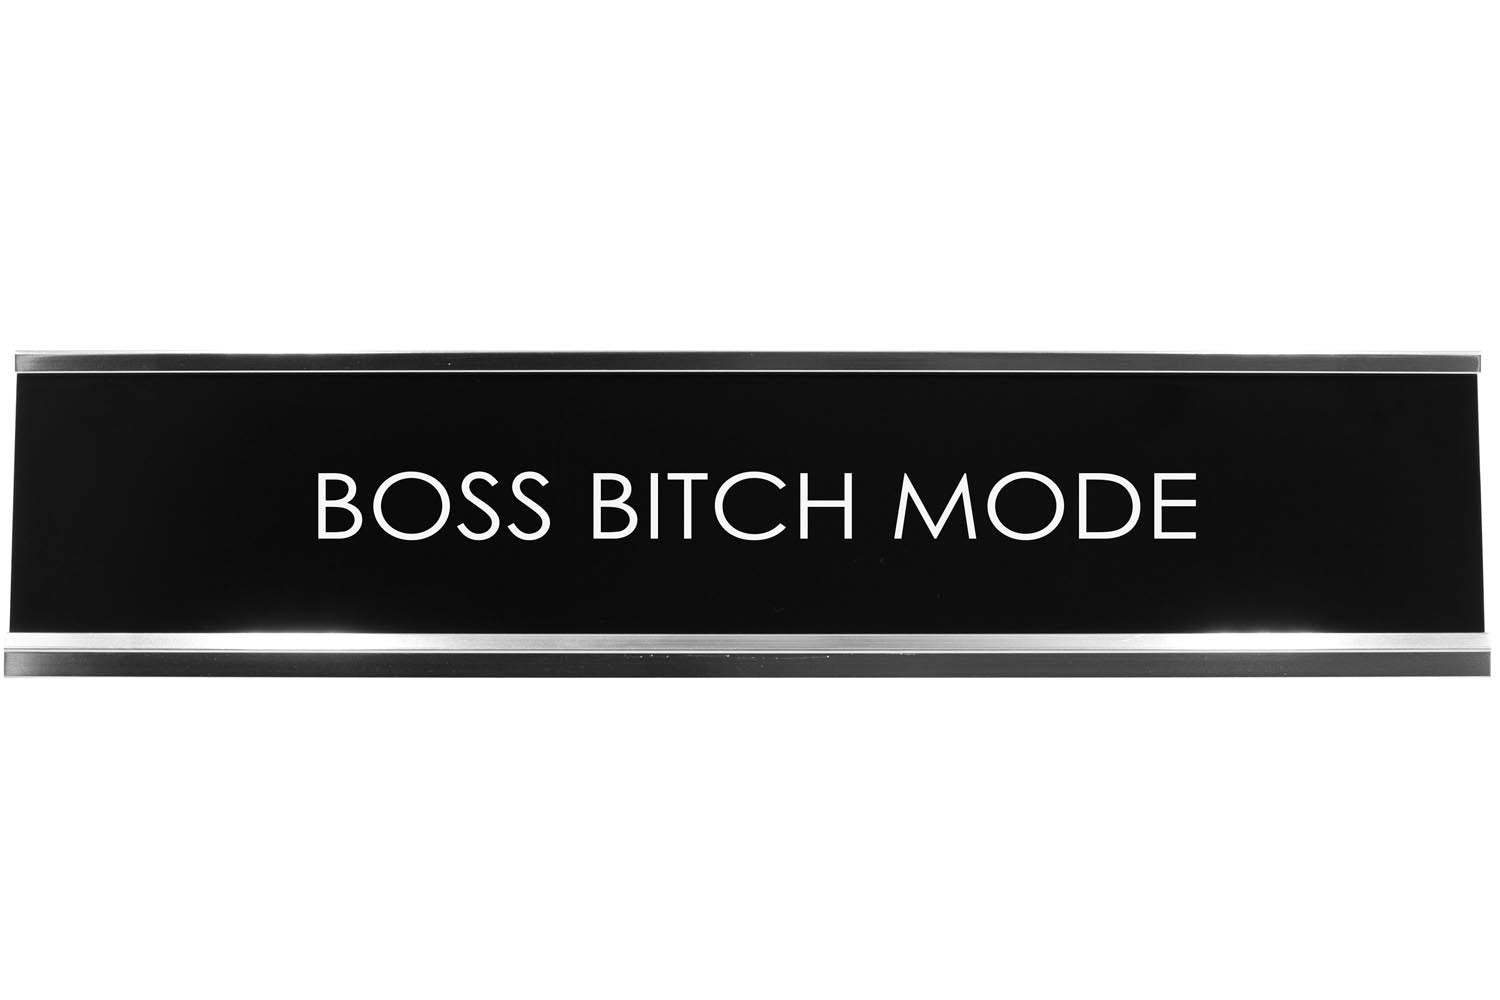 Boss Bitch Mode Novelty Desk Sign